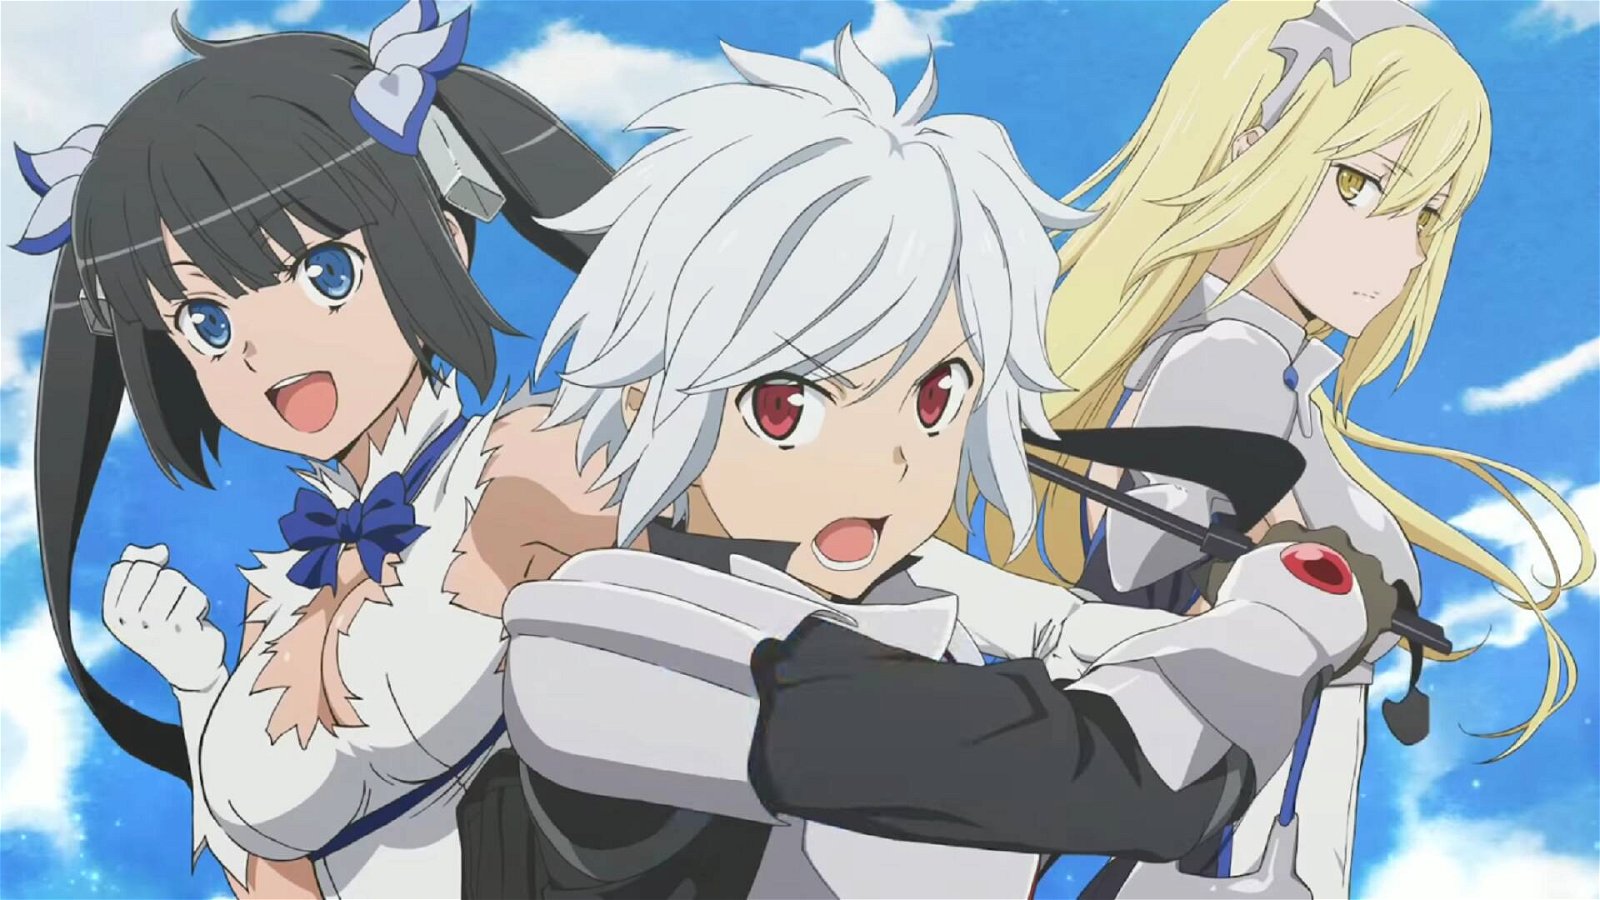 Immagine di Sword Oratoria in arrivo su Anime Generation